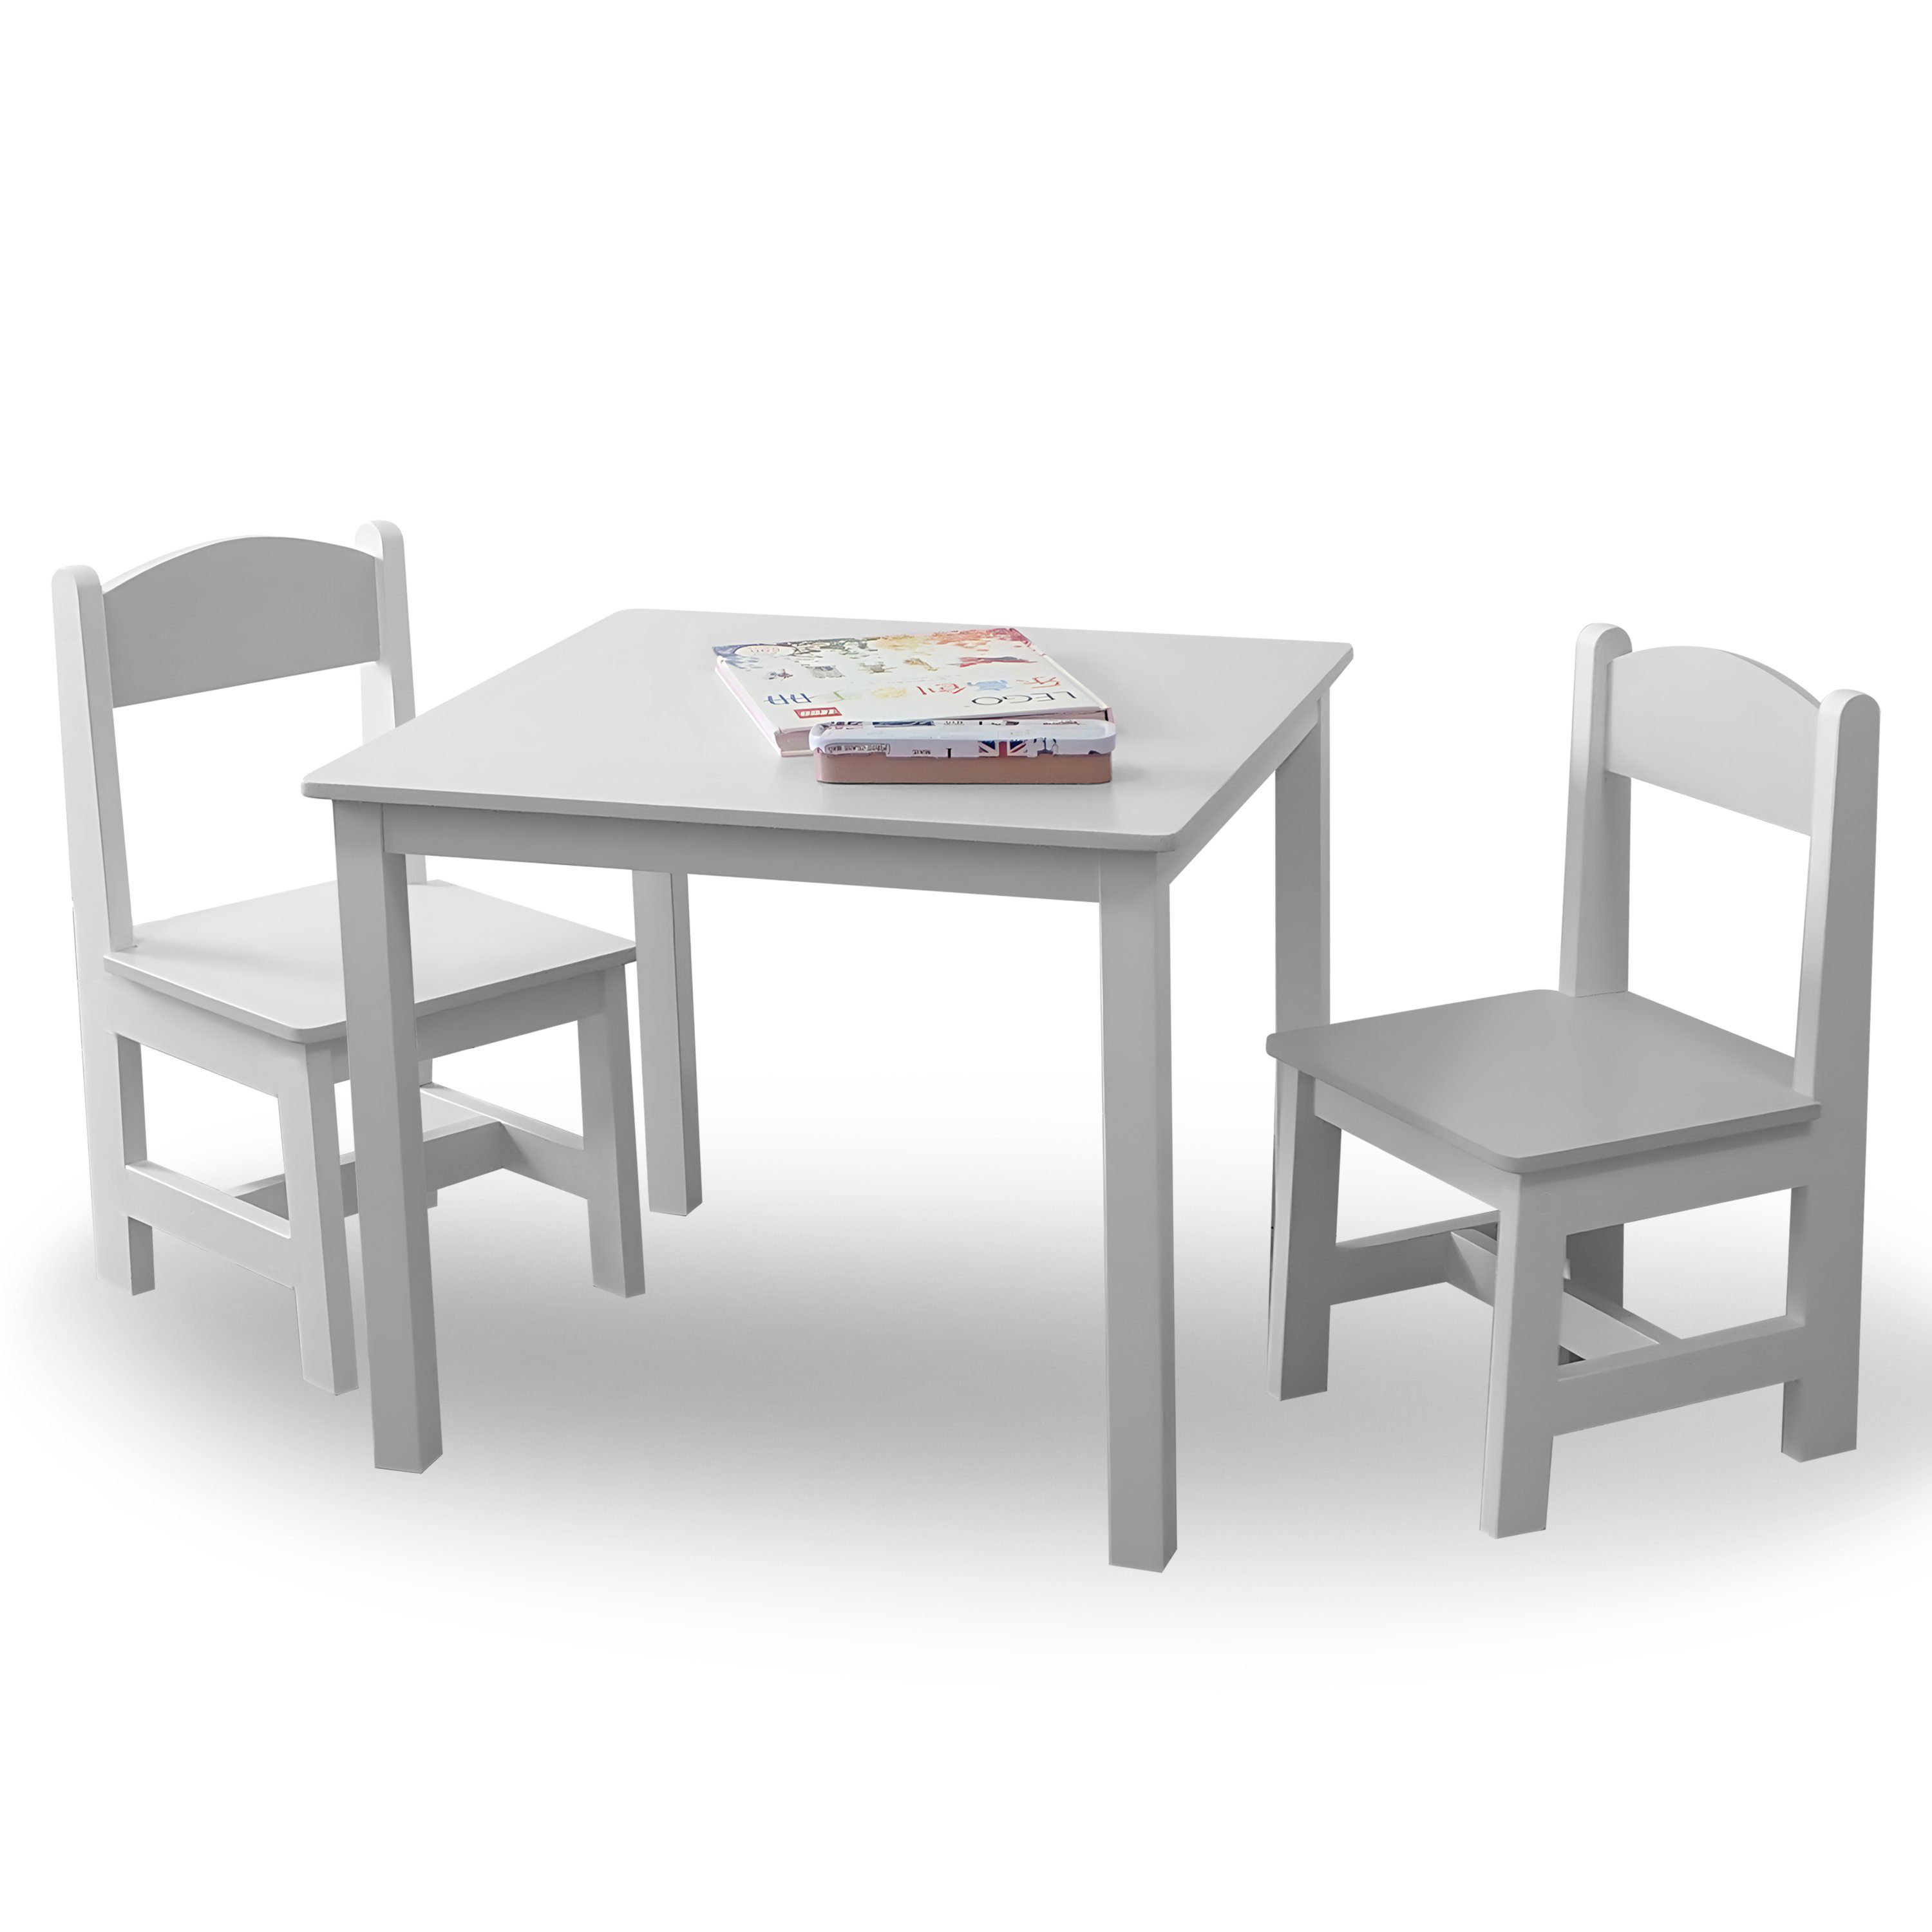 habeig Kindersitzgruppe Kindertisch & 2 Stühle Kindermöbelset Maltisch  Hocker 60x50x50cm, Inklusive leicht verständlicher Aufbauanleitung in  deutscher